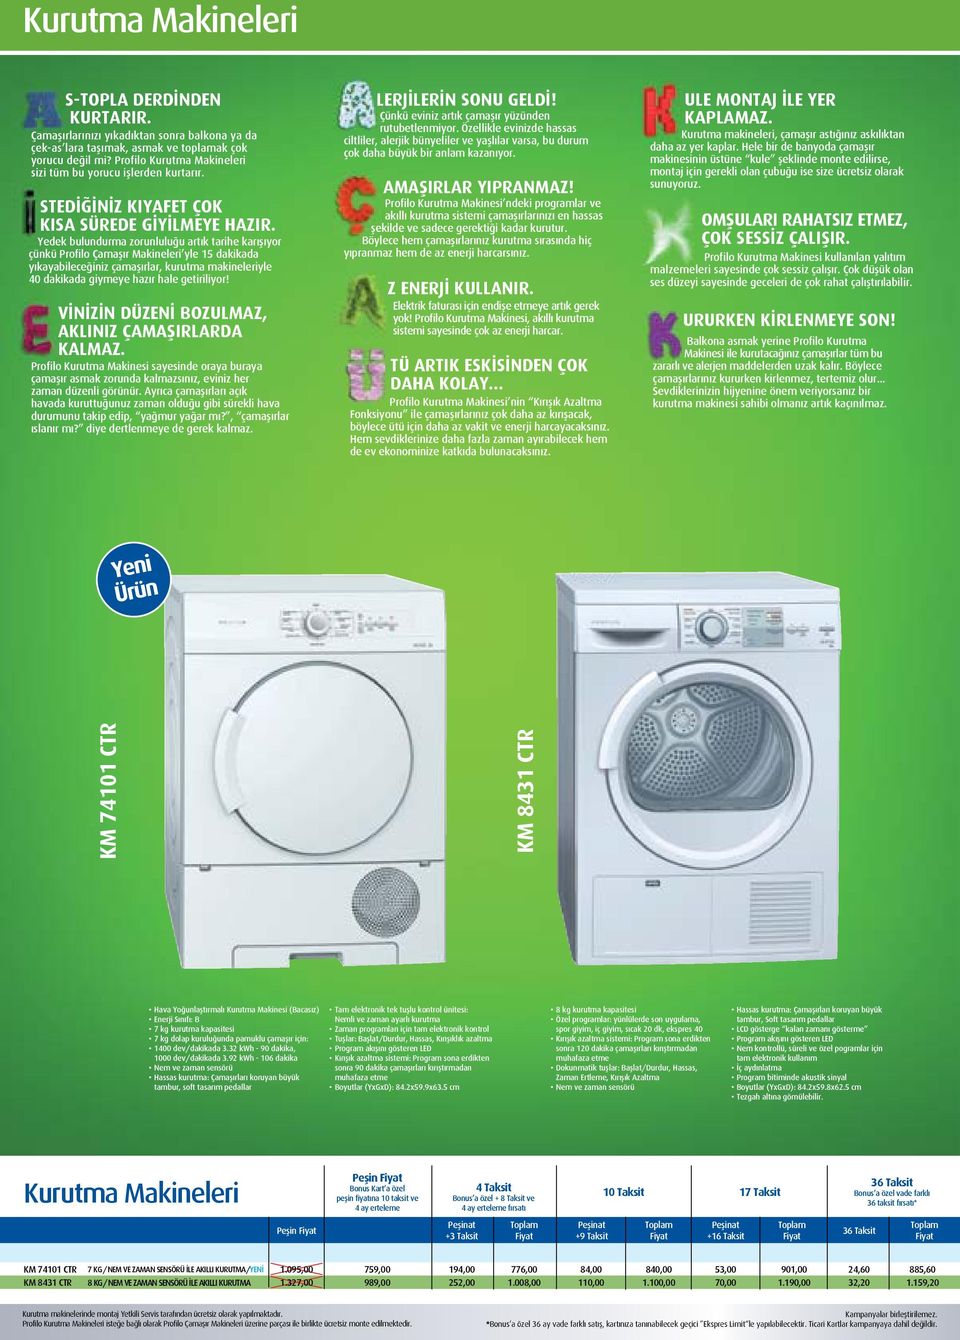 Yedek bulundurma zorunluluğu artık tarihe karışıyor çünkü Profilo Çamaşır Makineleri yle 15 dakikada yıkayabileceğiniz çamaşırlar, kurutma makineleriyle 40 dakikada giymeye hazır hale getiriliyor!